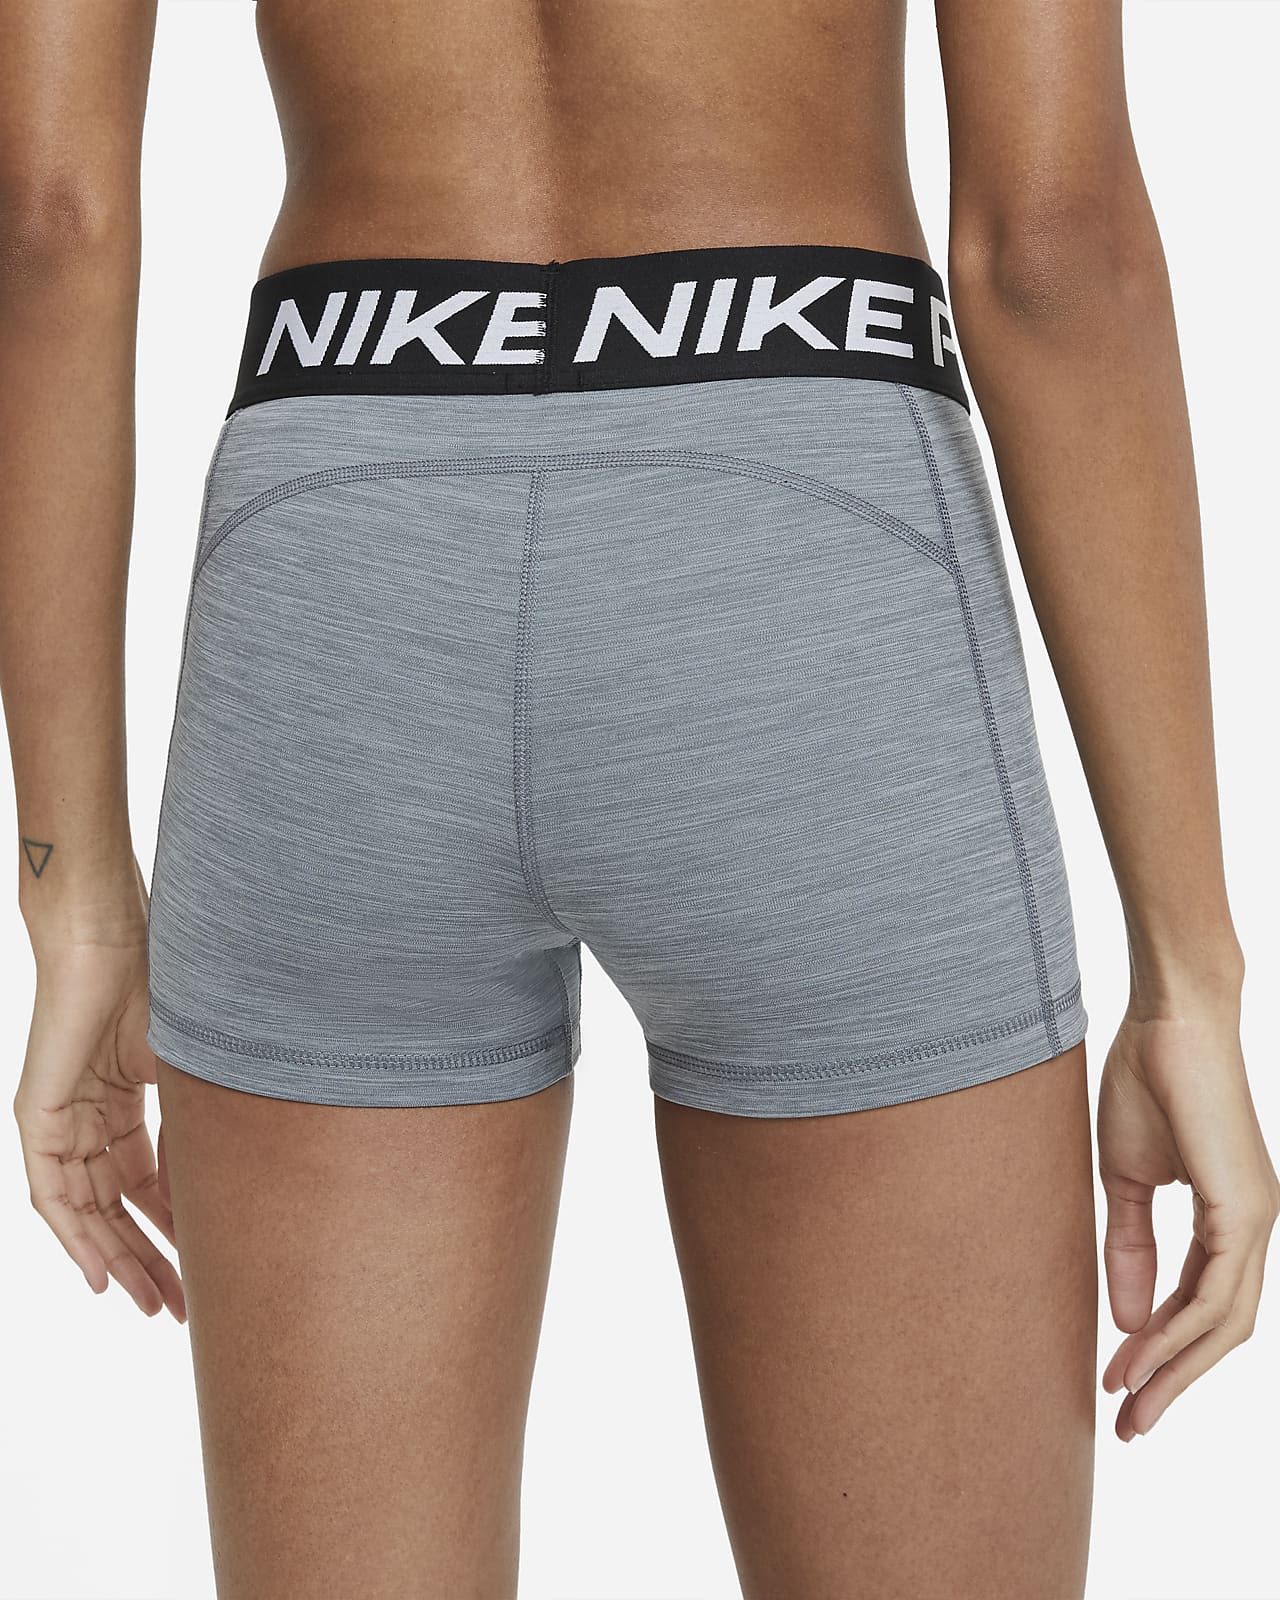 Hurtig Forge Byttehandel Nike Pro-shorts (8 cm) til kvinder. Nike DK